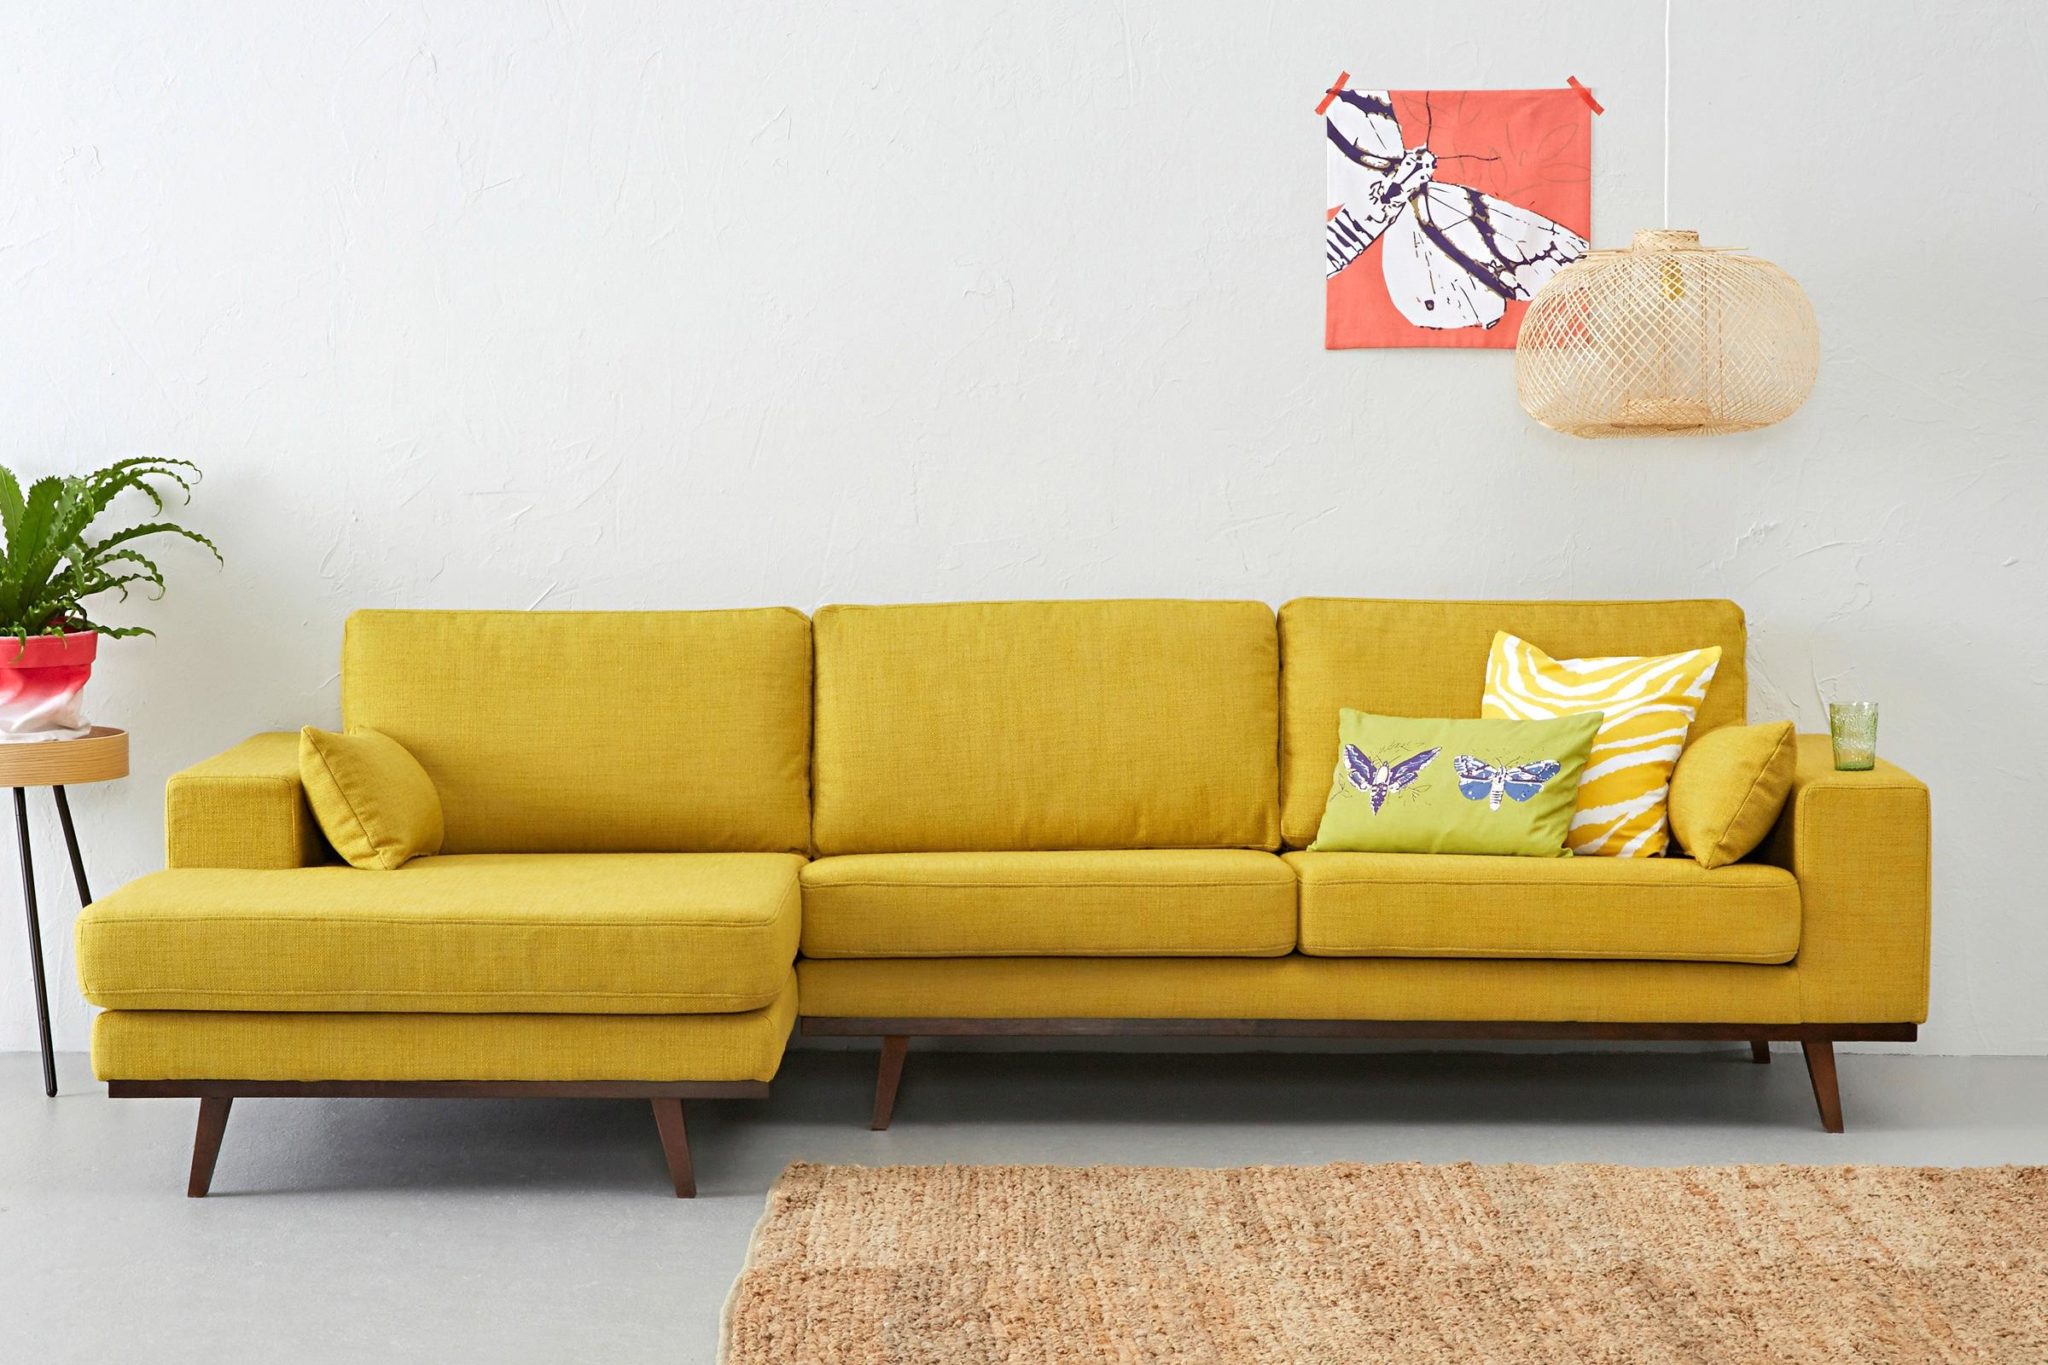 Sofa-in-a-calmer-hue-of-yellow